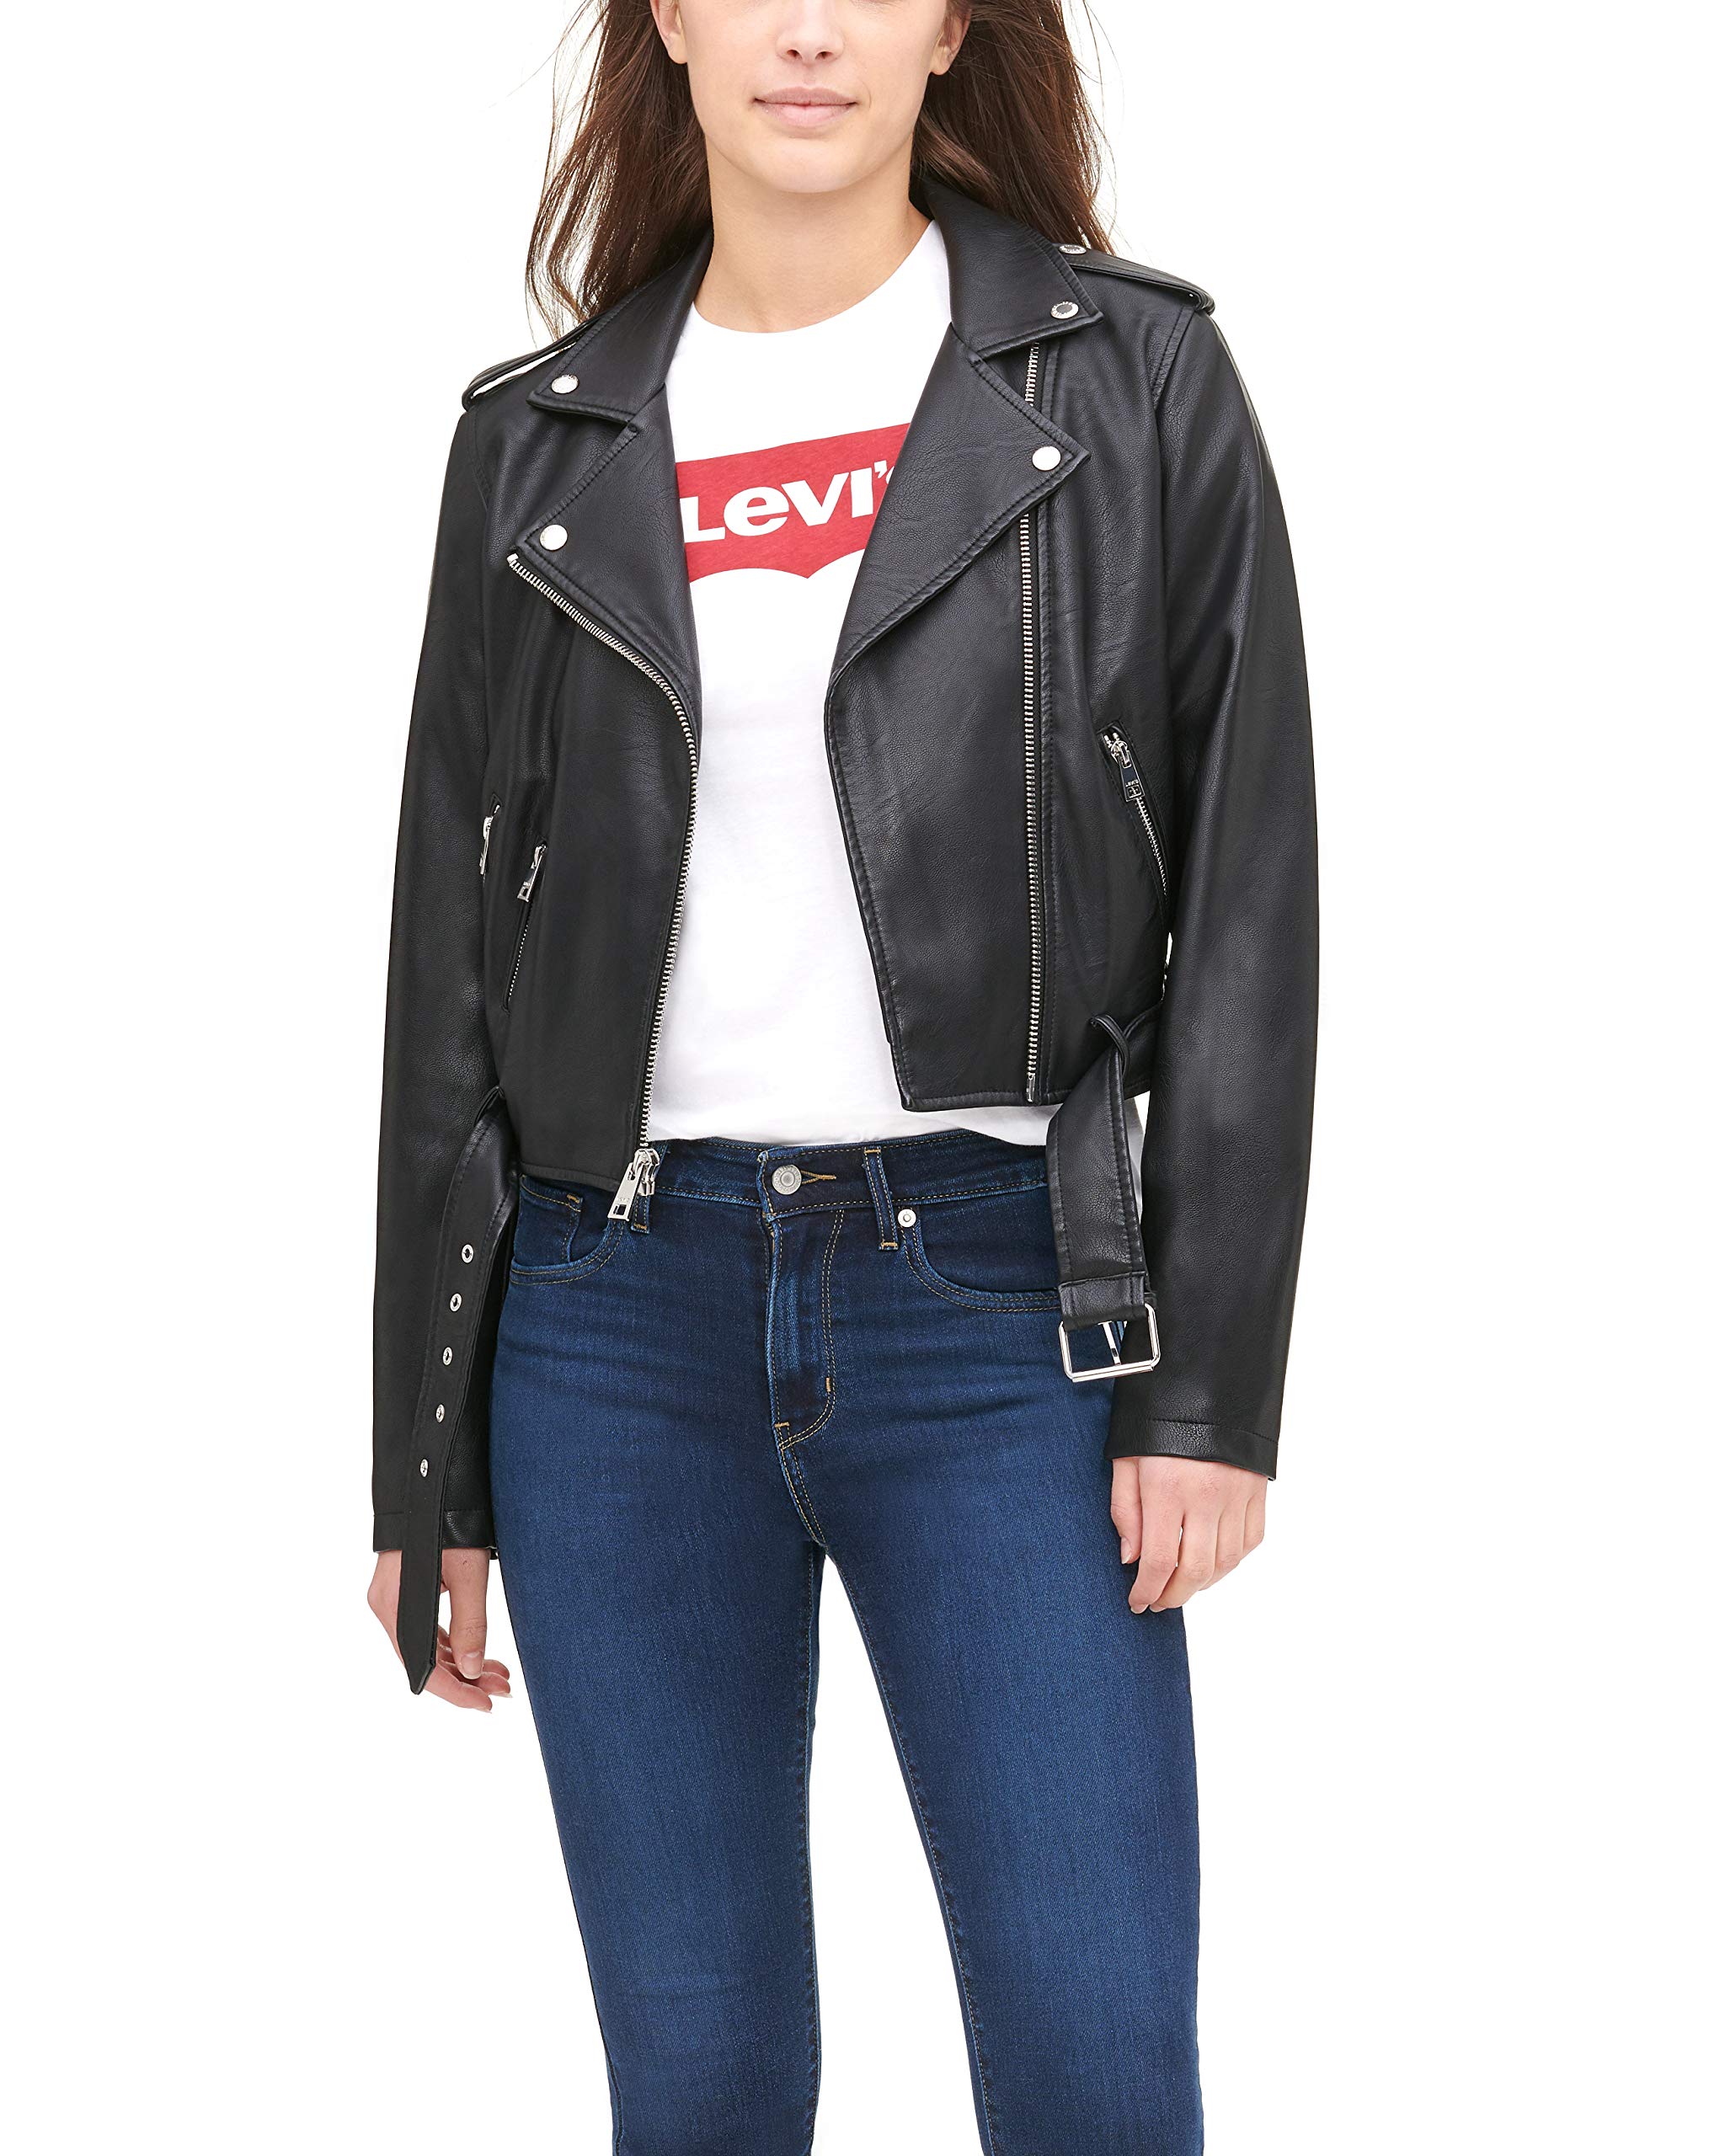 Actualizar 46+ imagen levi leather jacket women’s